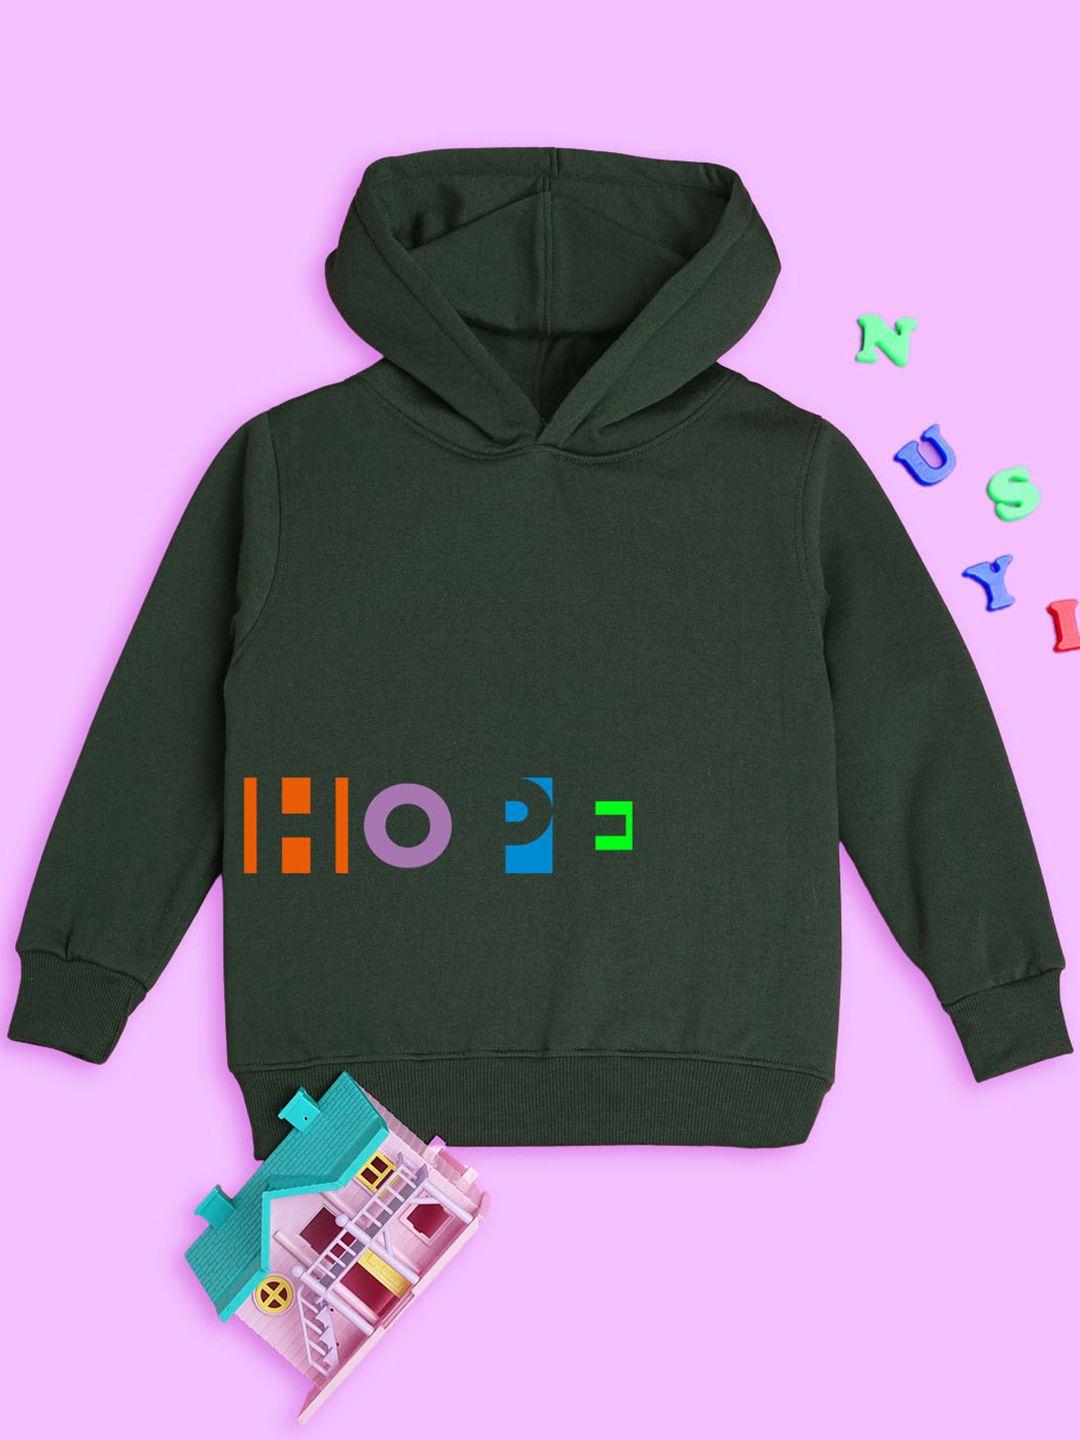 nusyl kids typography printed hooded fleece sweatshirt